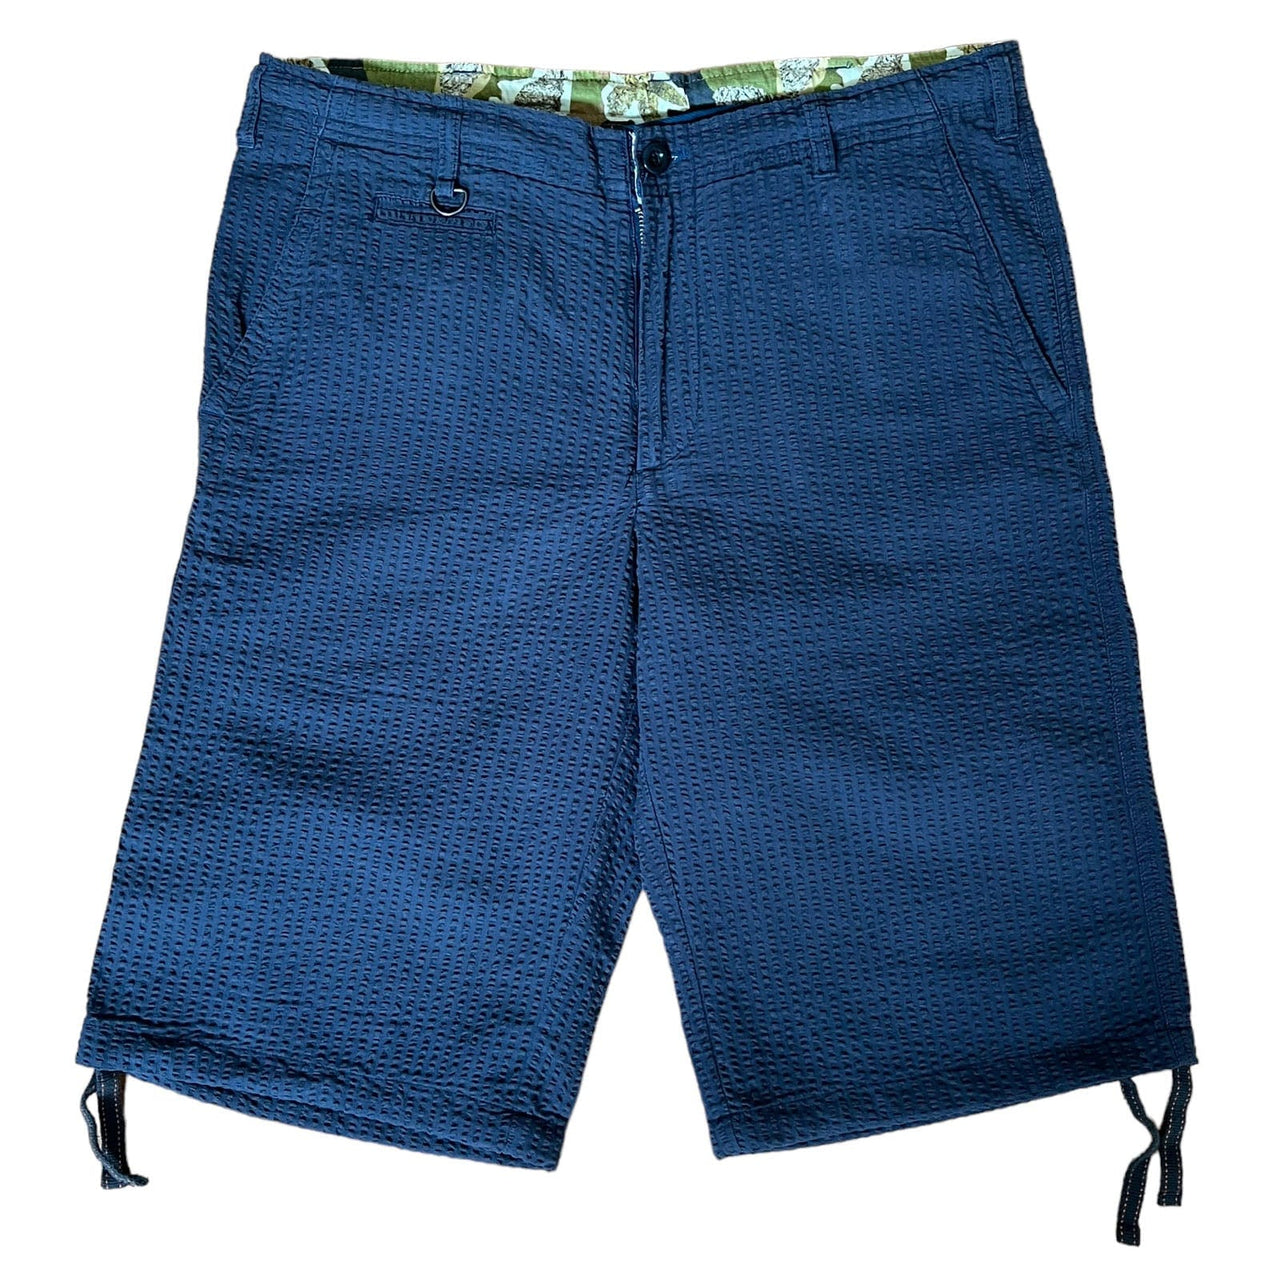 SKIDZ Shorts Seersucker Shorts - Dark Blue Striped